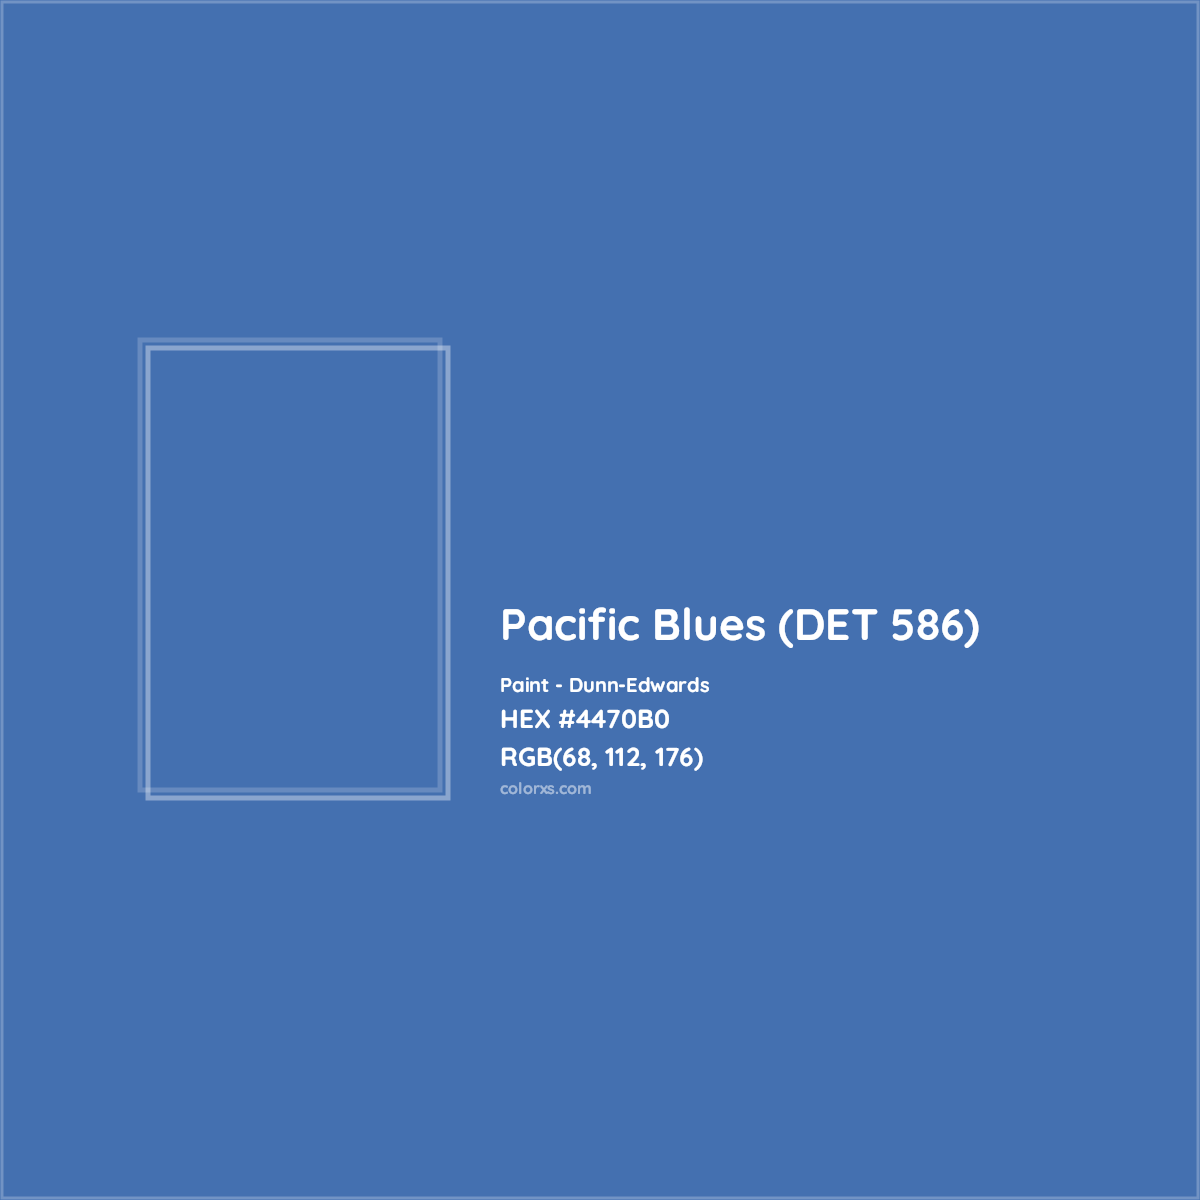 HEX #4470B0 Pacific Blues (DET 586) Paint Dunn-Edwards - Color Code